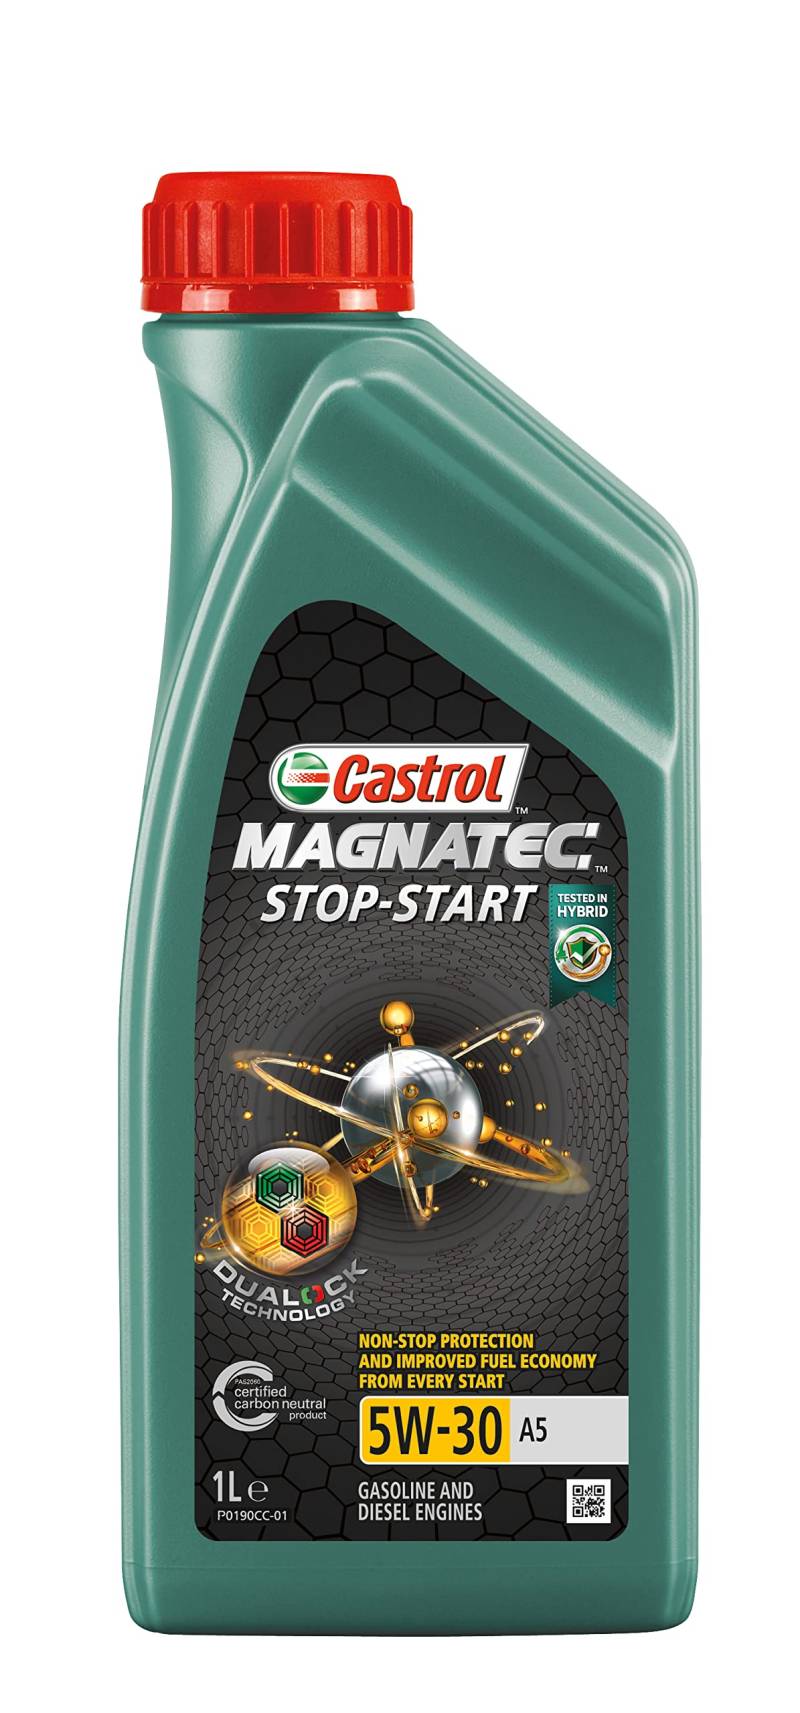 Castrol MAGNATEC Stop-Start 5W-30 A5, 1 Liter von Castrol